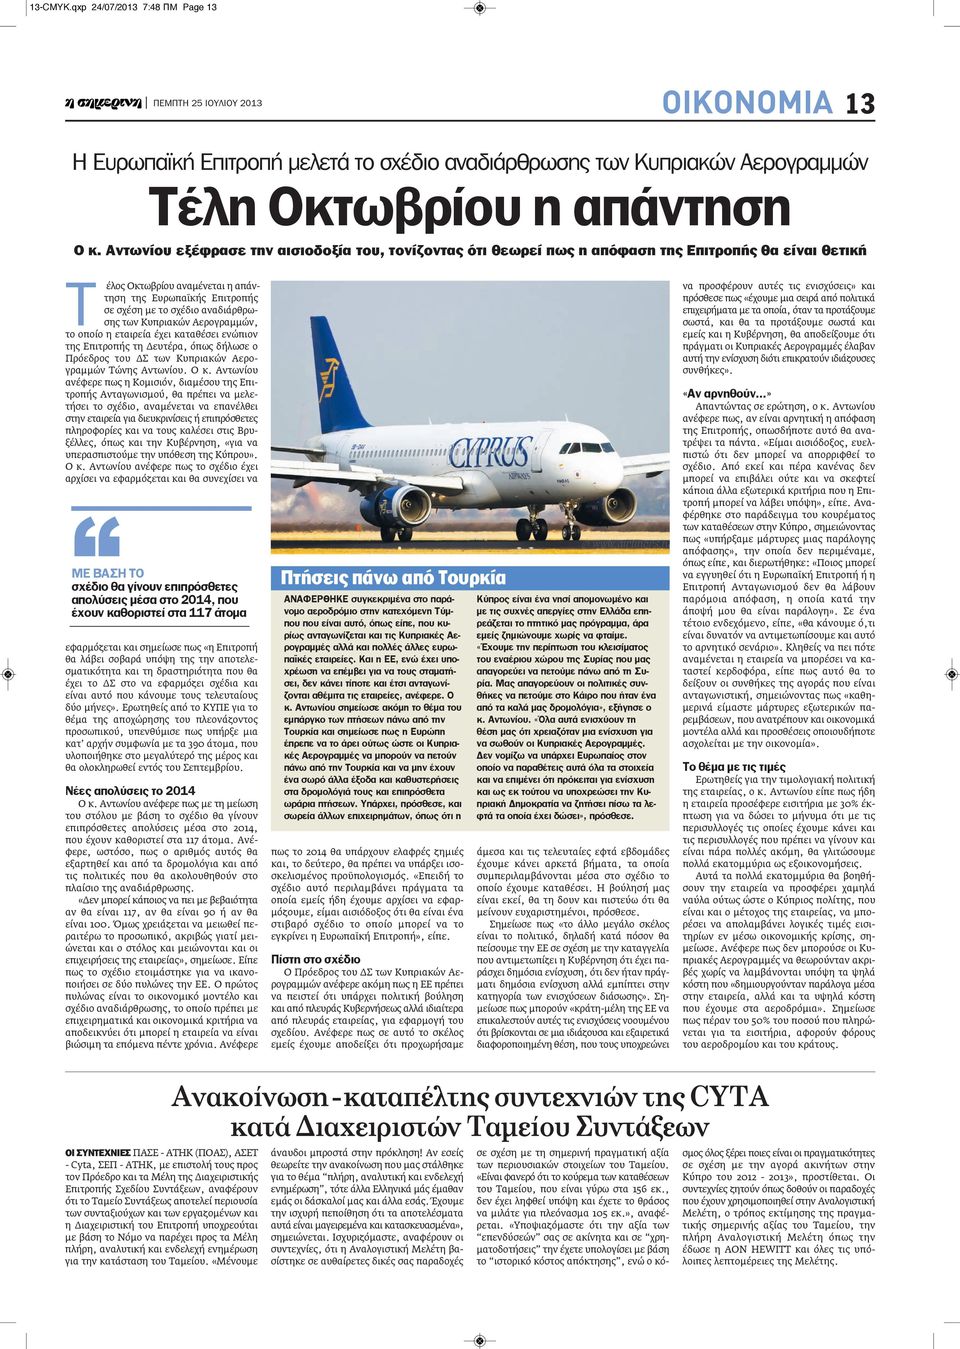 αναδιάρθρωσης των Κυπριακών Αερογραμμών, το οποίο η εταιρεία έχει καταθέσει ενώπιον της Επιτροπής τη Δευτέρα, όπως δήλωσε ο Πρόεδρος του ΔΣ των Κυπριακών Αερογραμμών Τώνης Αντωνίου. Ο κ.